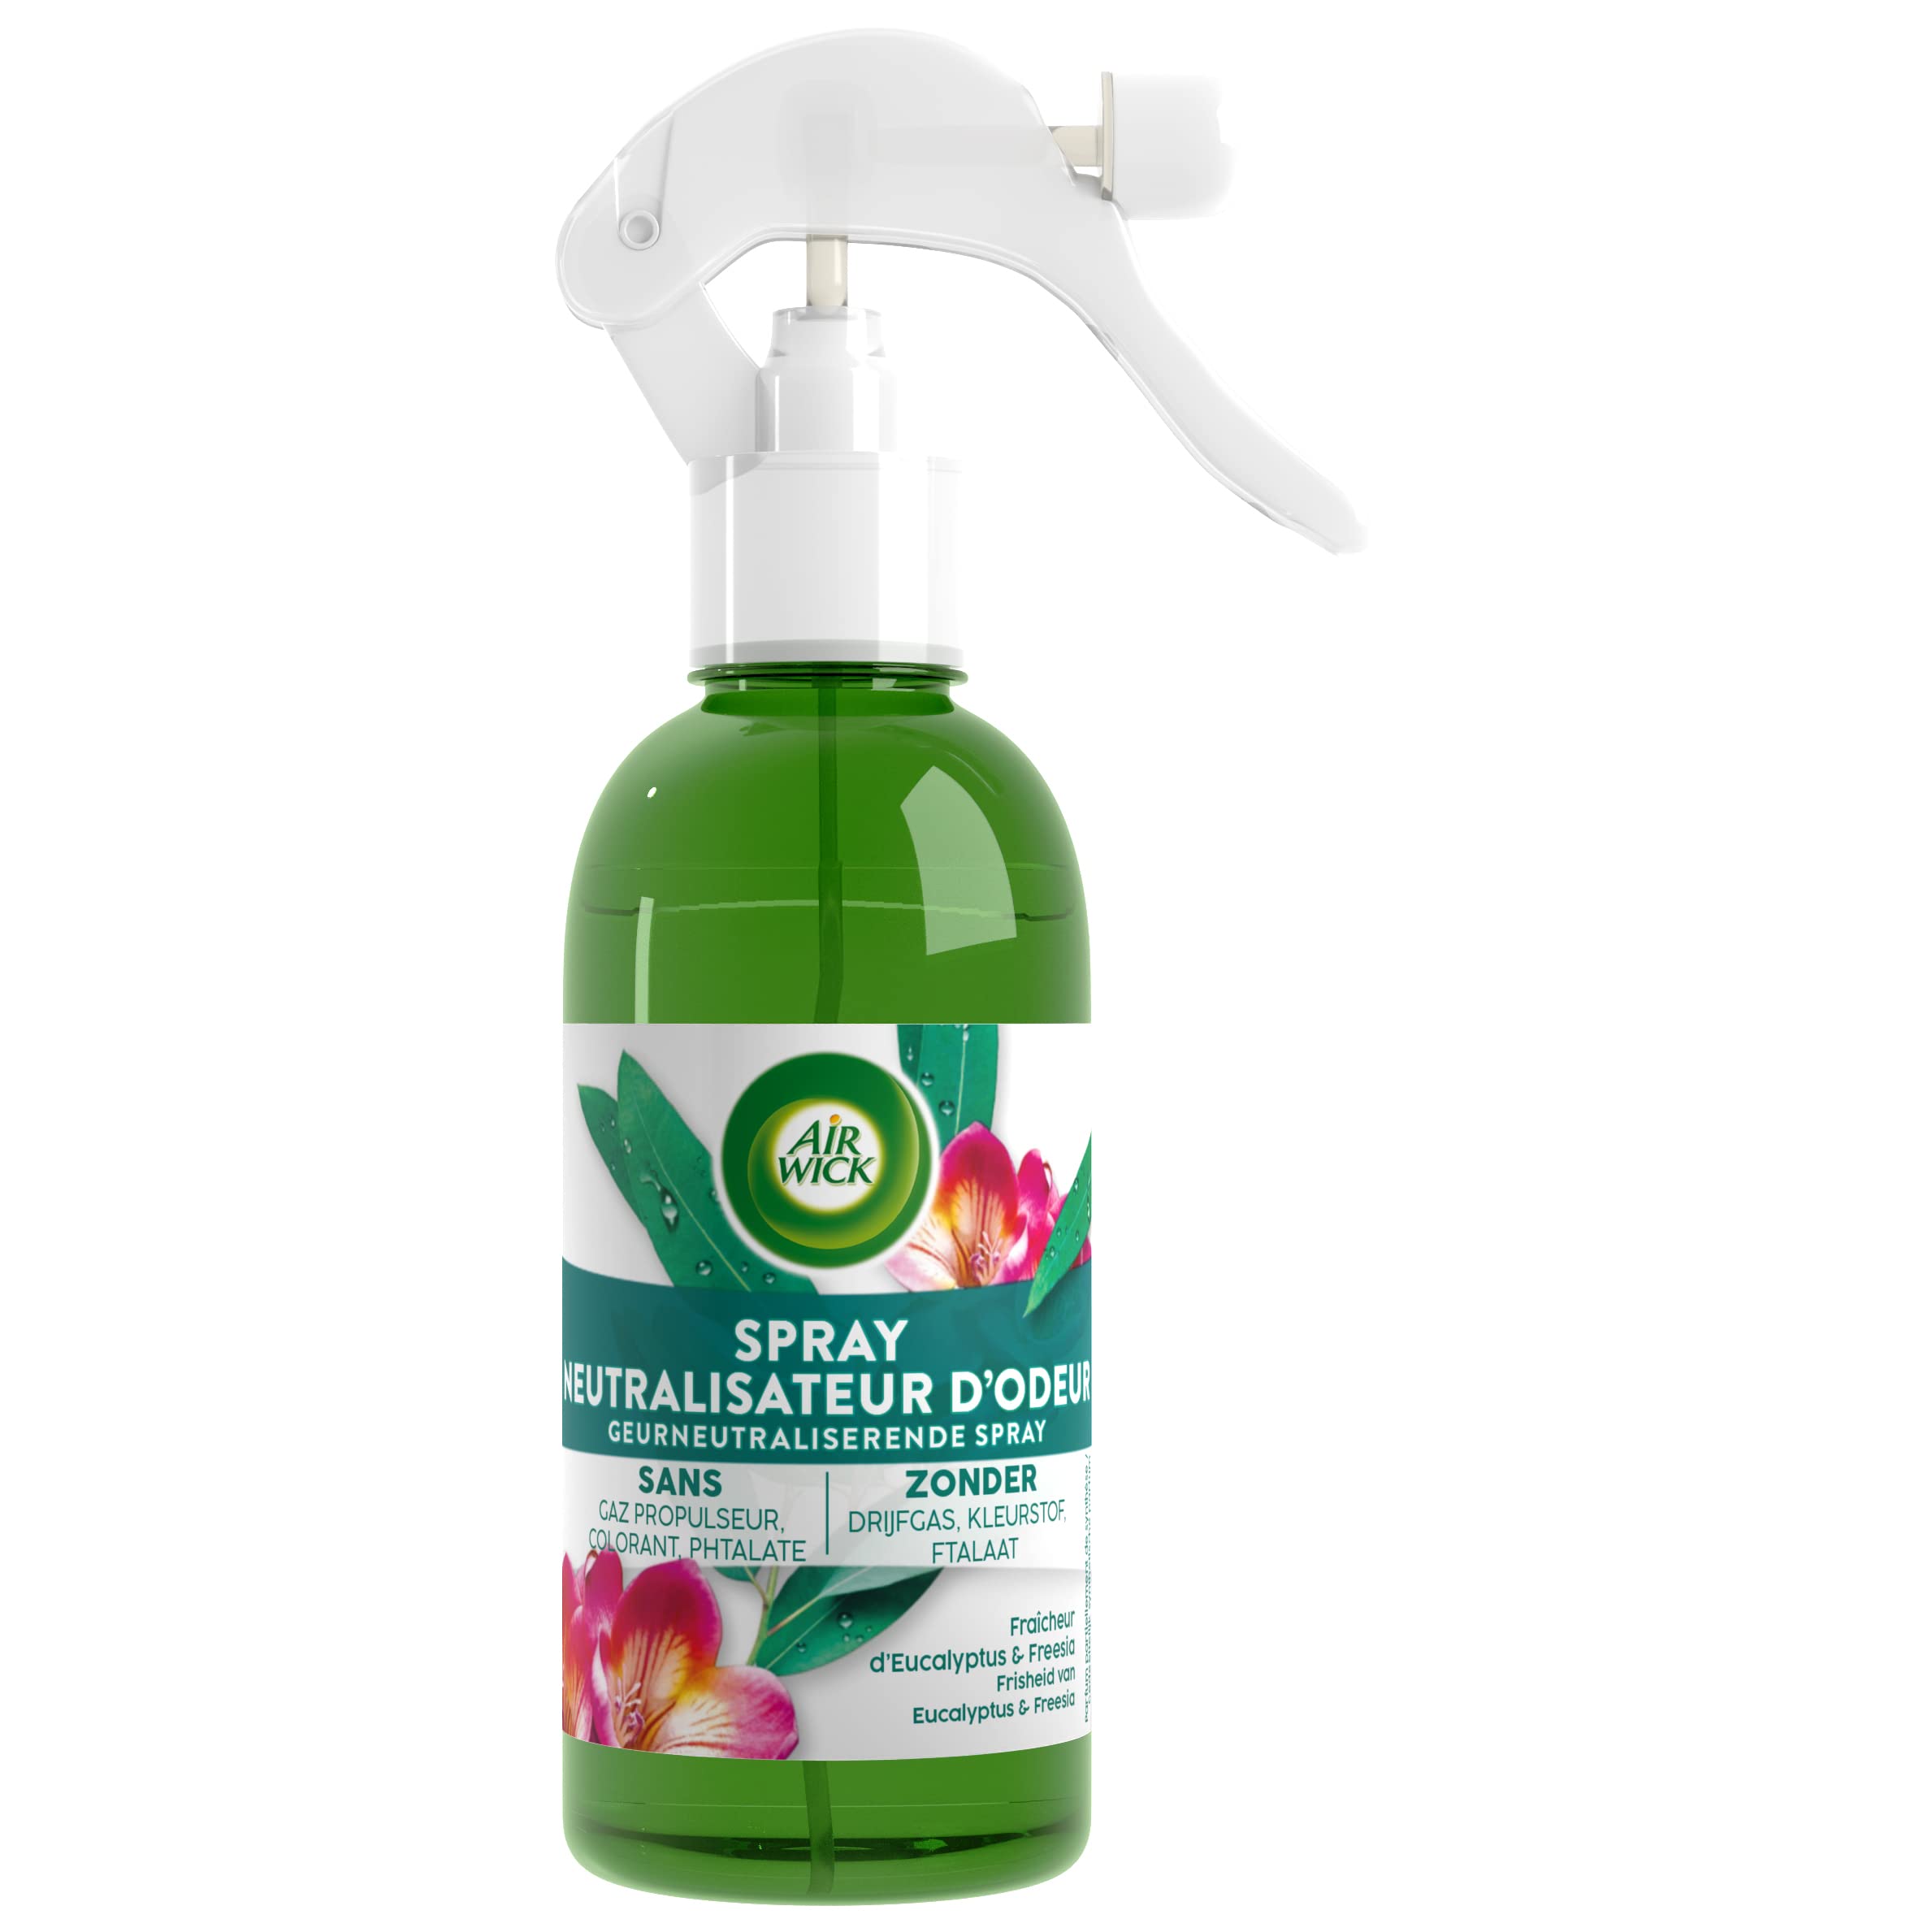 Achat Air Wick Spray Neutralisateur D´Odeurs Aux Huiles Essentielles Eucalyptus et Freesia - Blanc, 237 ml (Lot de 1) 2cUFzvjfg en vente